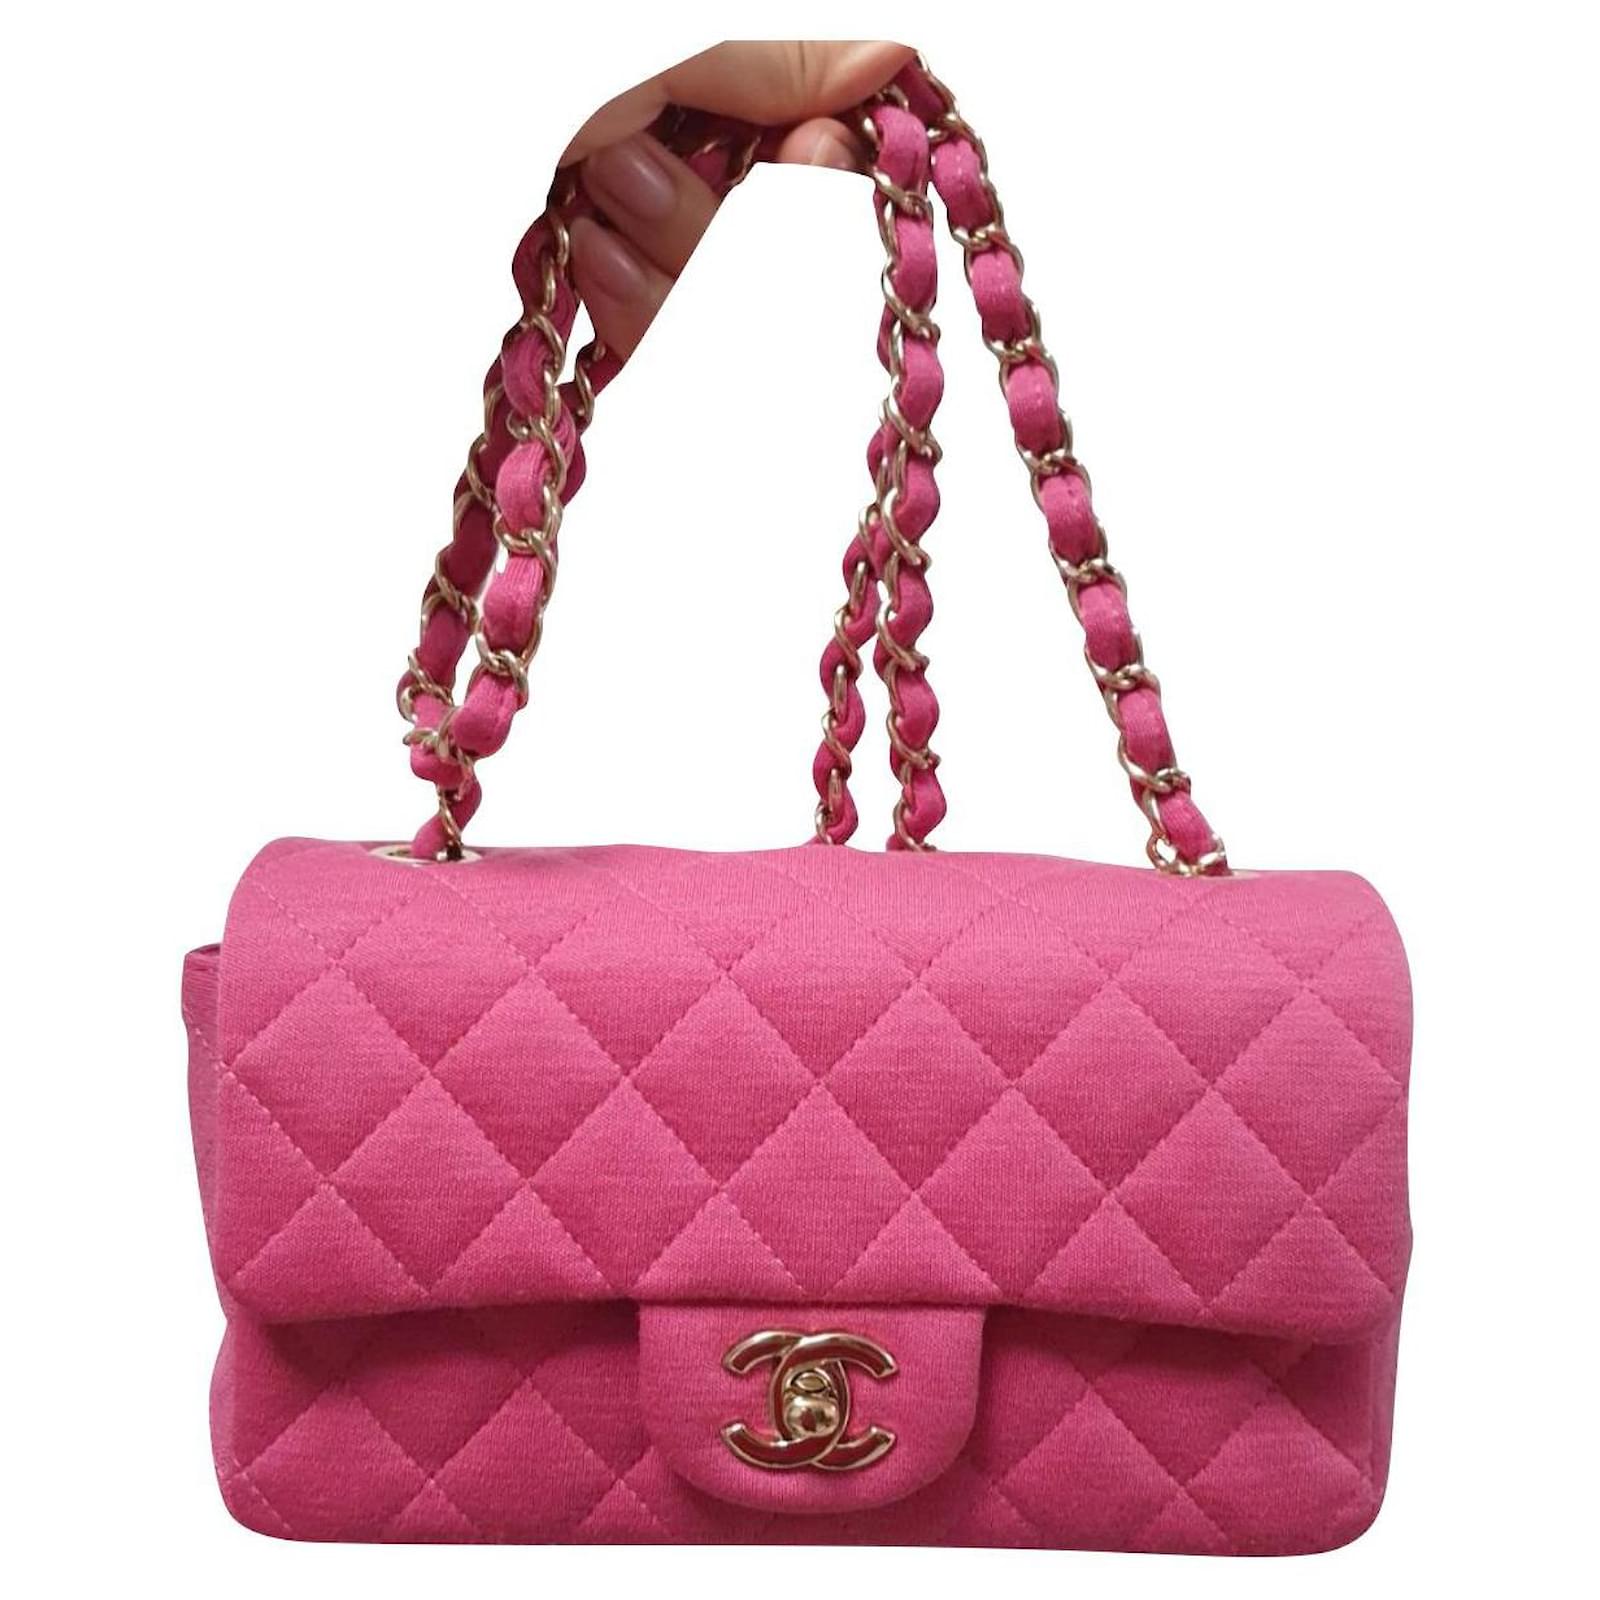 chanel bag pink color